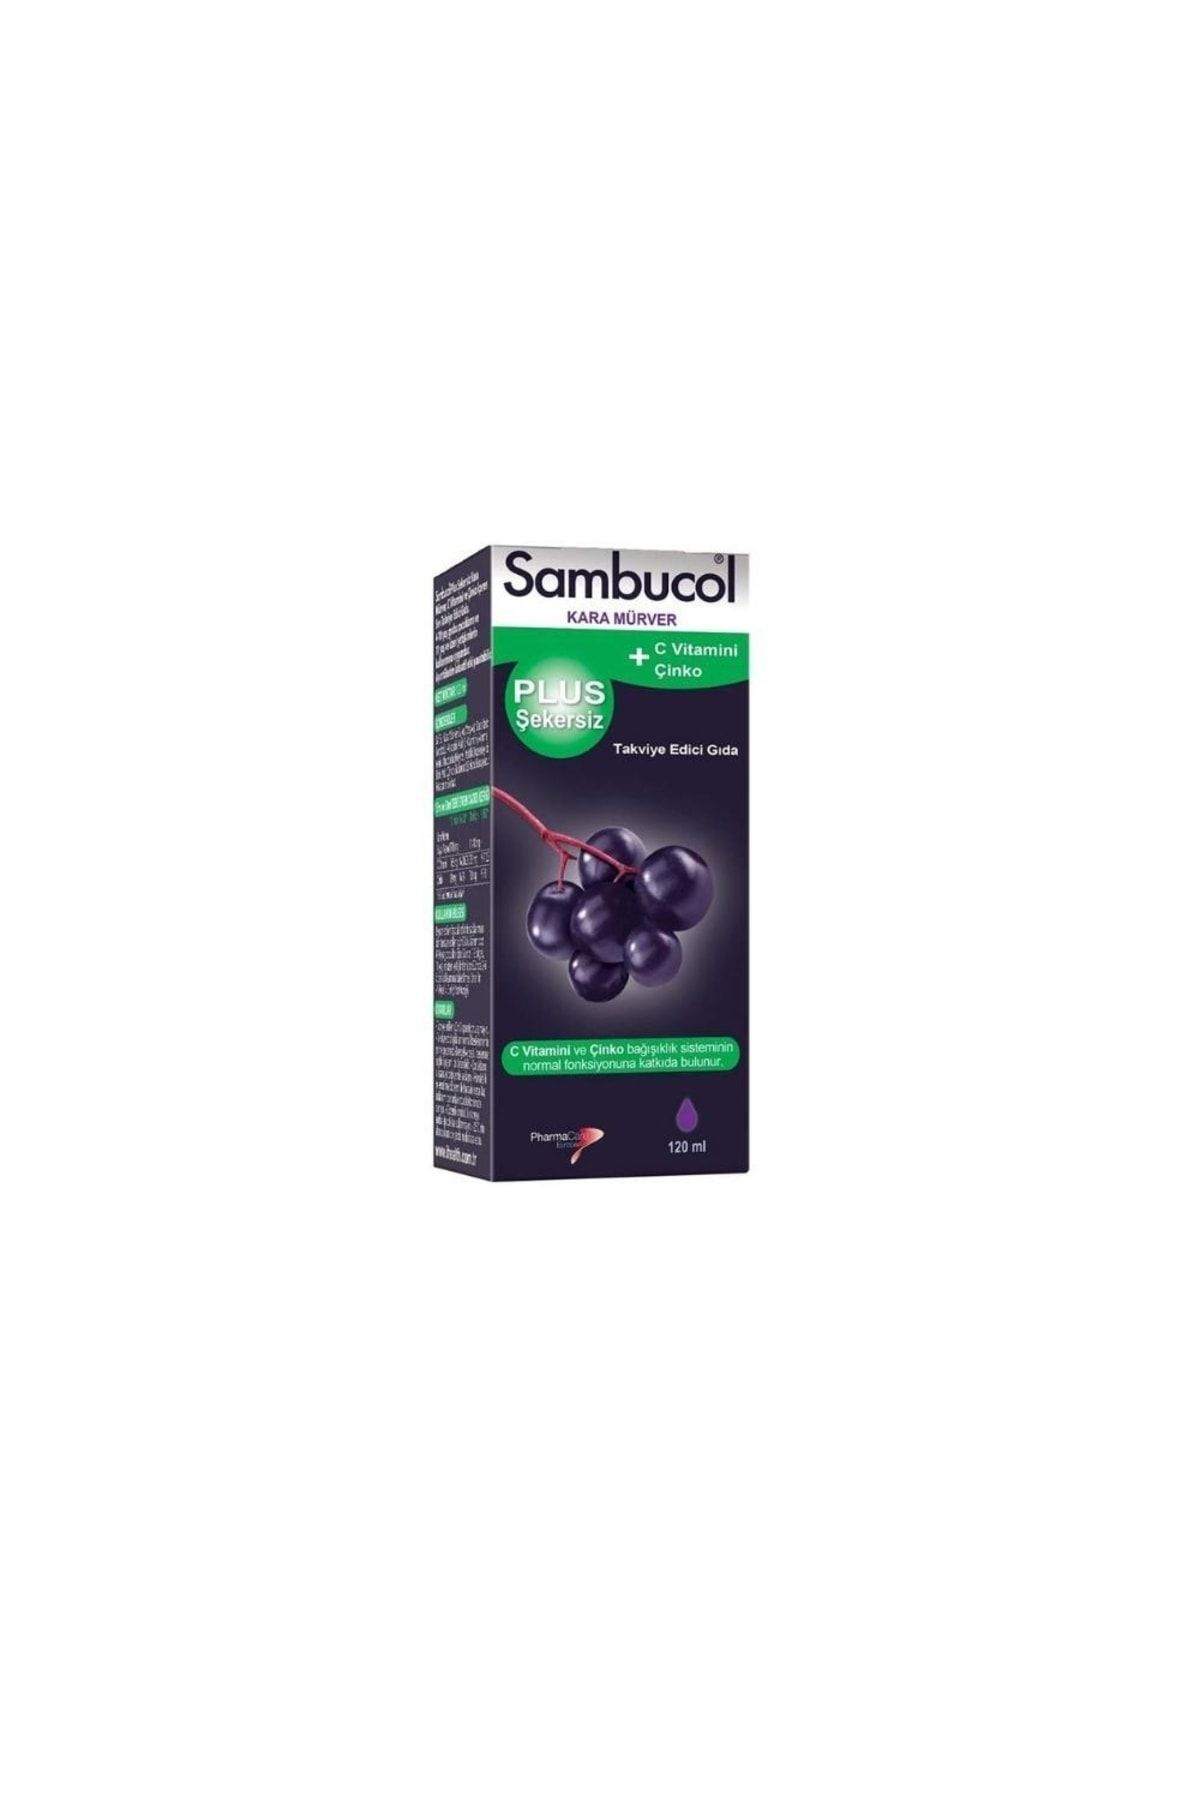 Sambucol Plus Şekersiz C Vitamini + Çinko Içeren Kara Mürver Ekstreli Takviye Edici Gıda 120 Ml